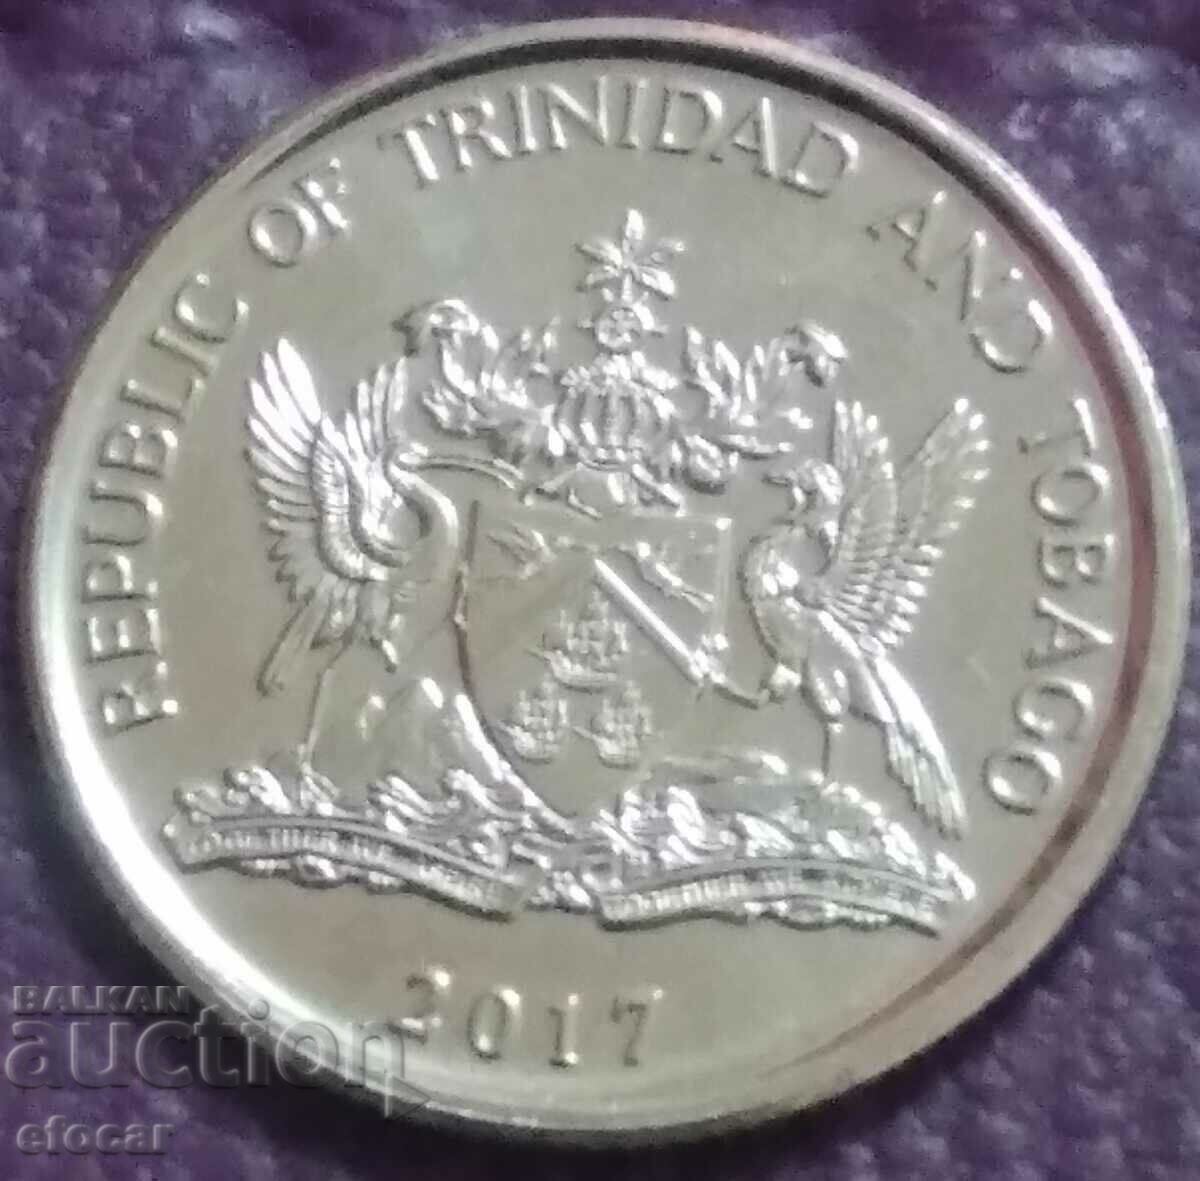 10 σεντ Τρινιντάντ και Τομπάγκο 2017